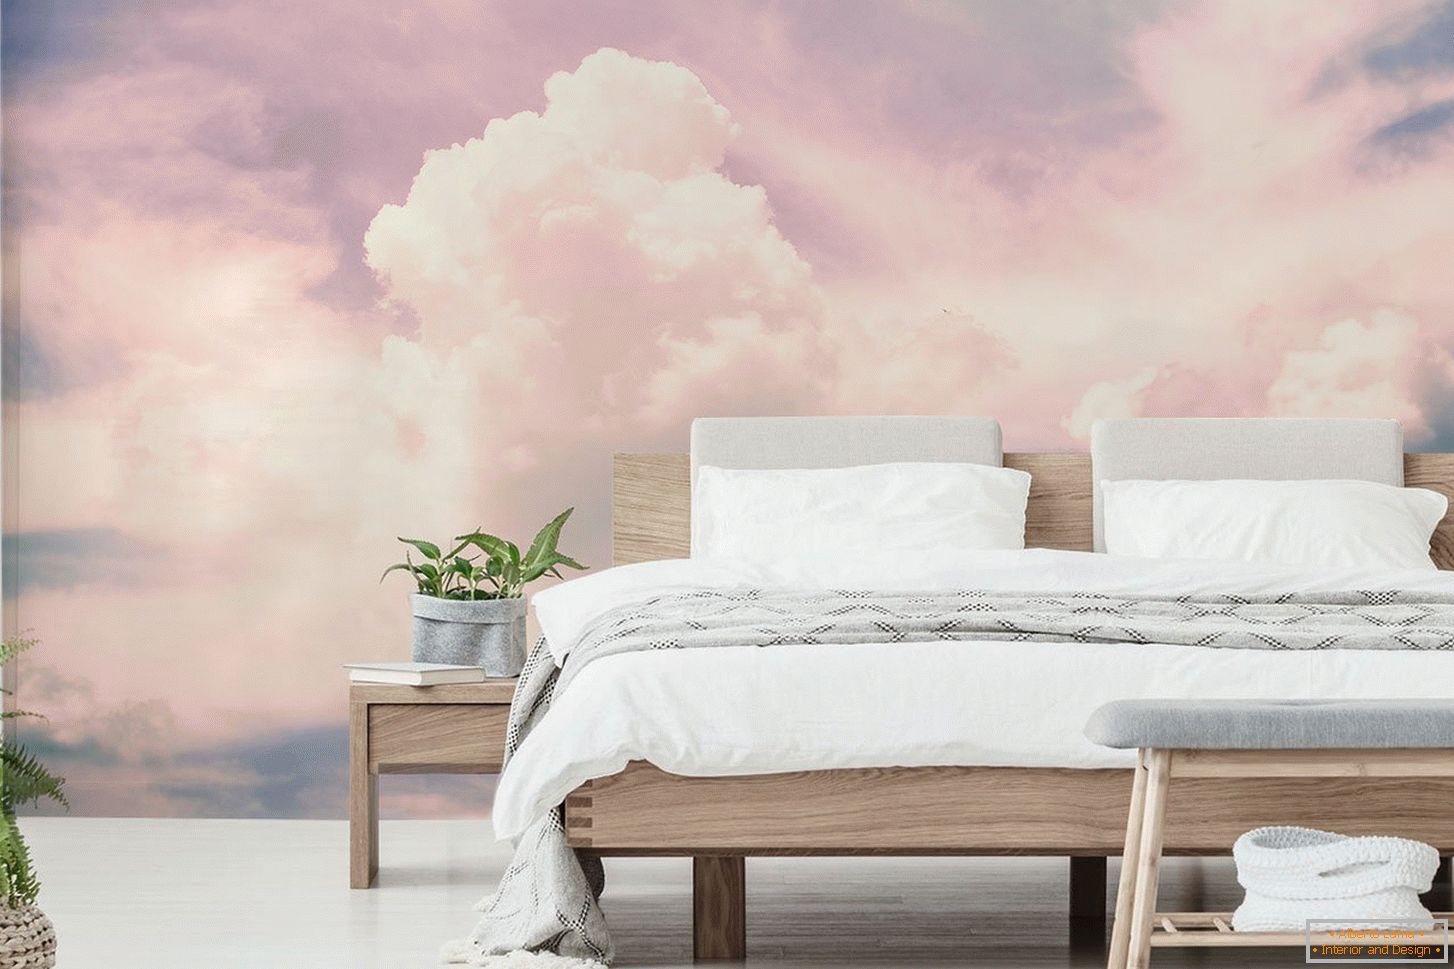 Papéis de parede de fotos com nuvens cor de rosa